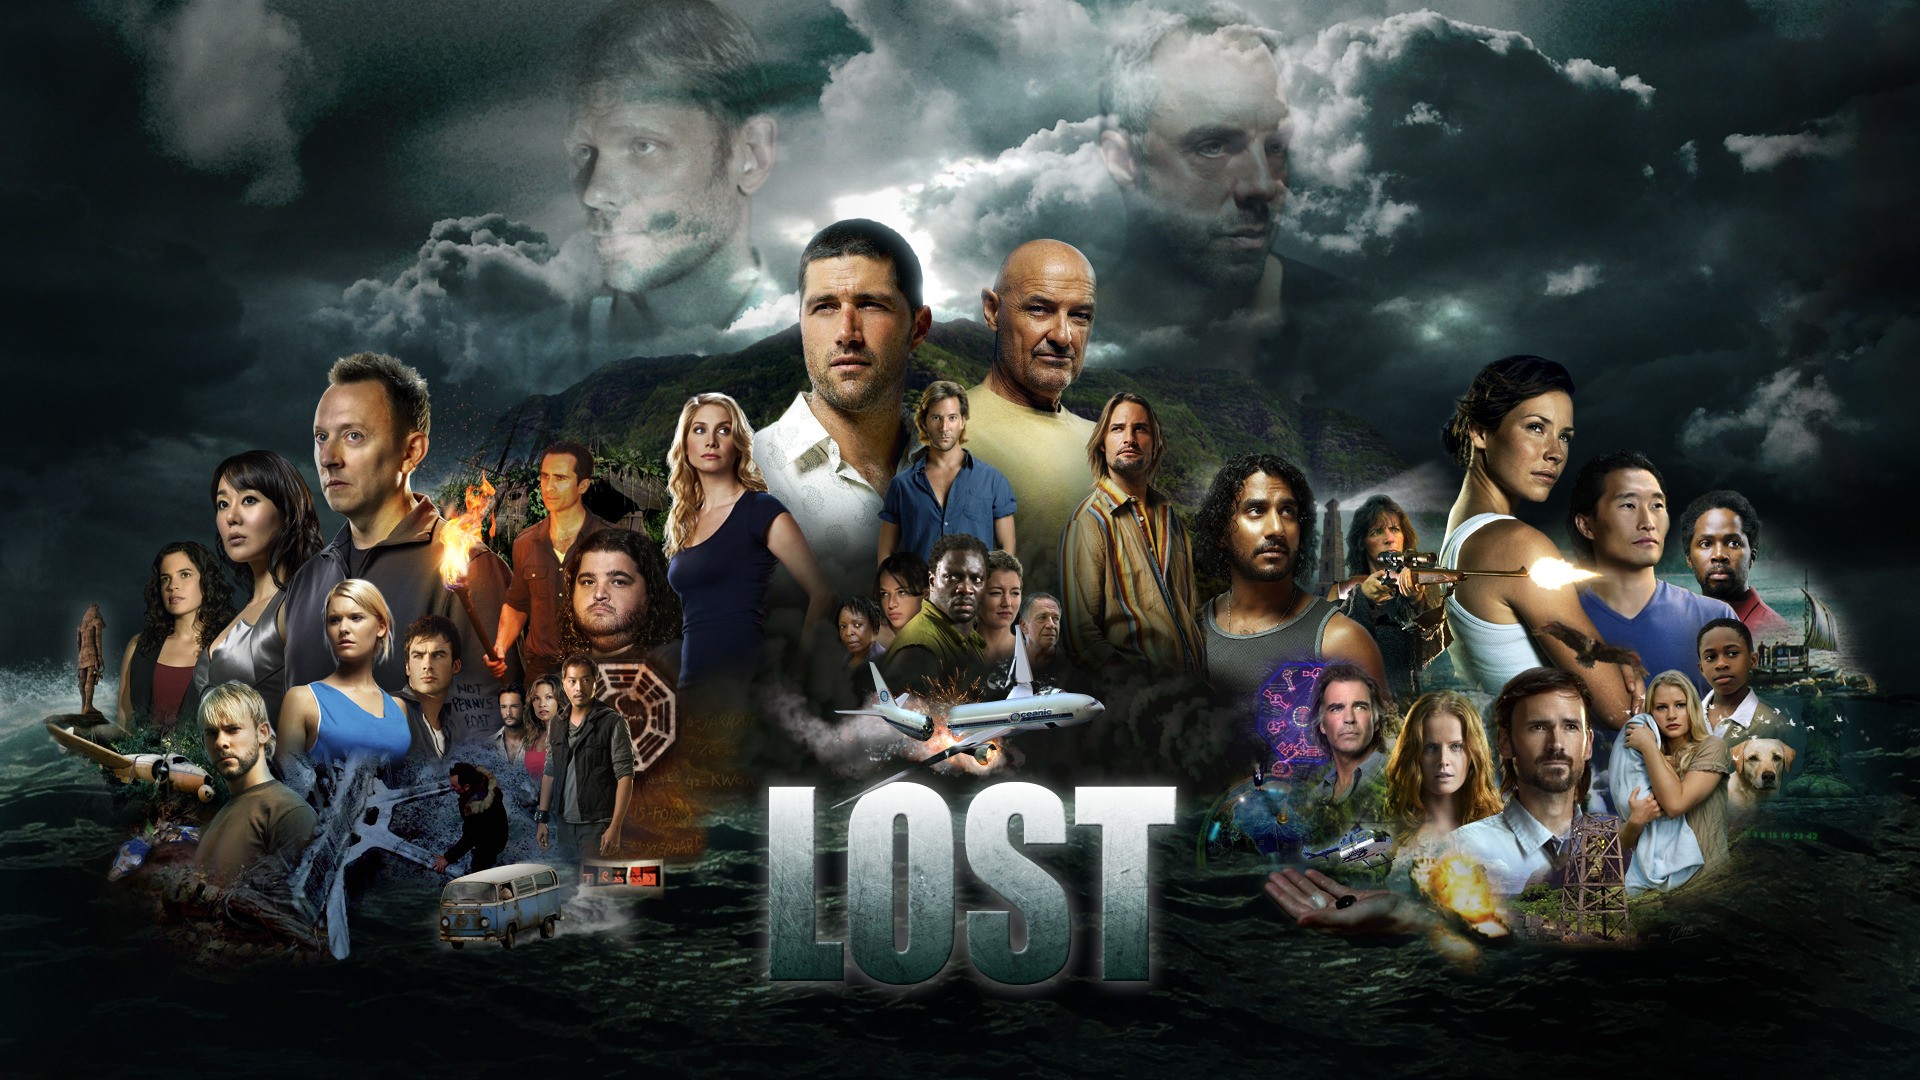 Lost, Evangeline Lilly, Michelle Rodríguez Wallpaper